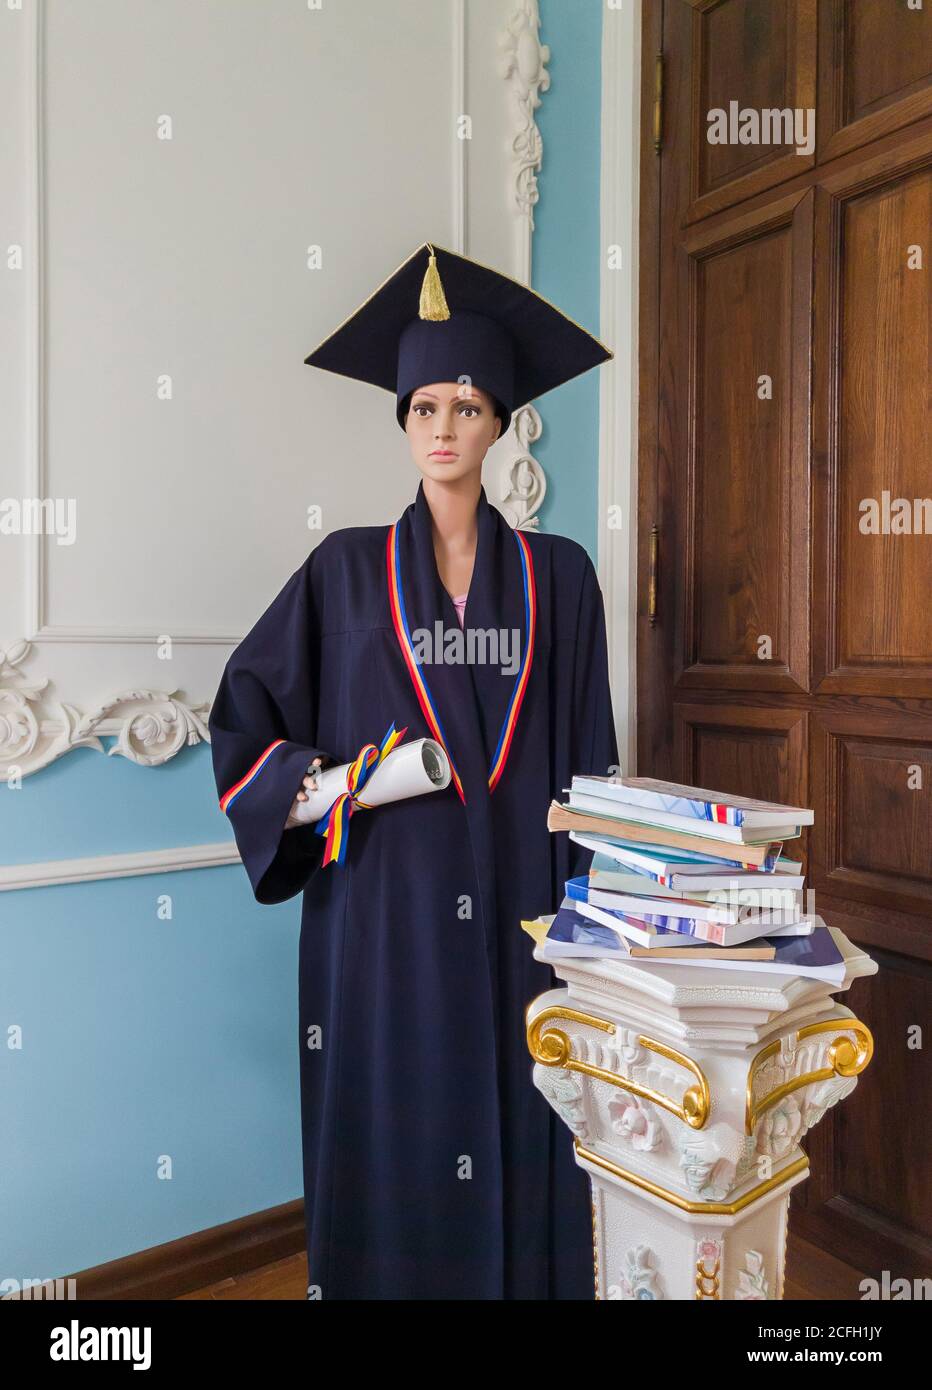 Student Schaufensterpuppe, in einer Bibliothek, gekleidet als Absolvent mit einer schwarzen akademischen Kappe und Kleid, hält ein Diplom in der Hand. Wunderschön verzierte alte Pil Stockfoto